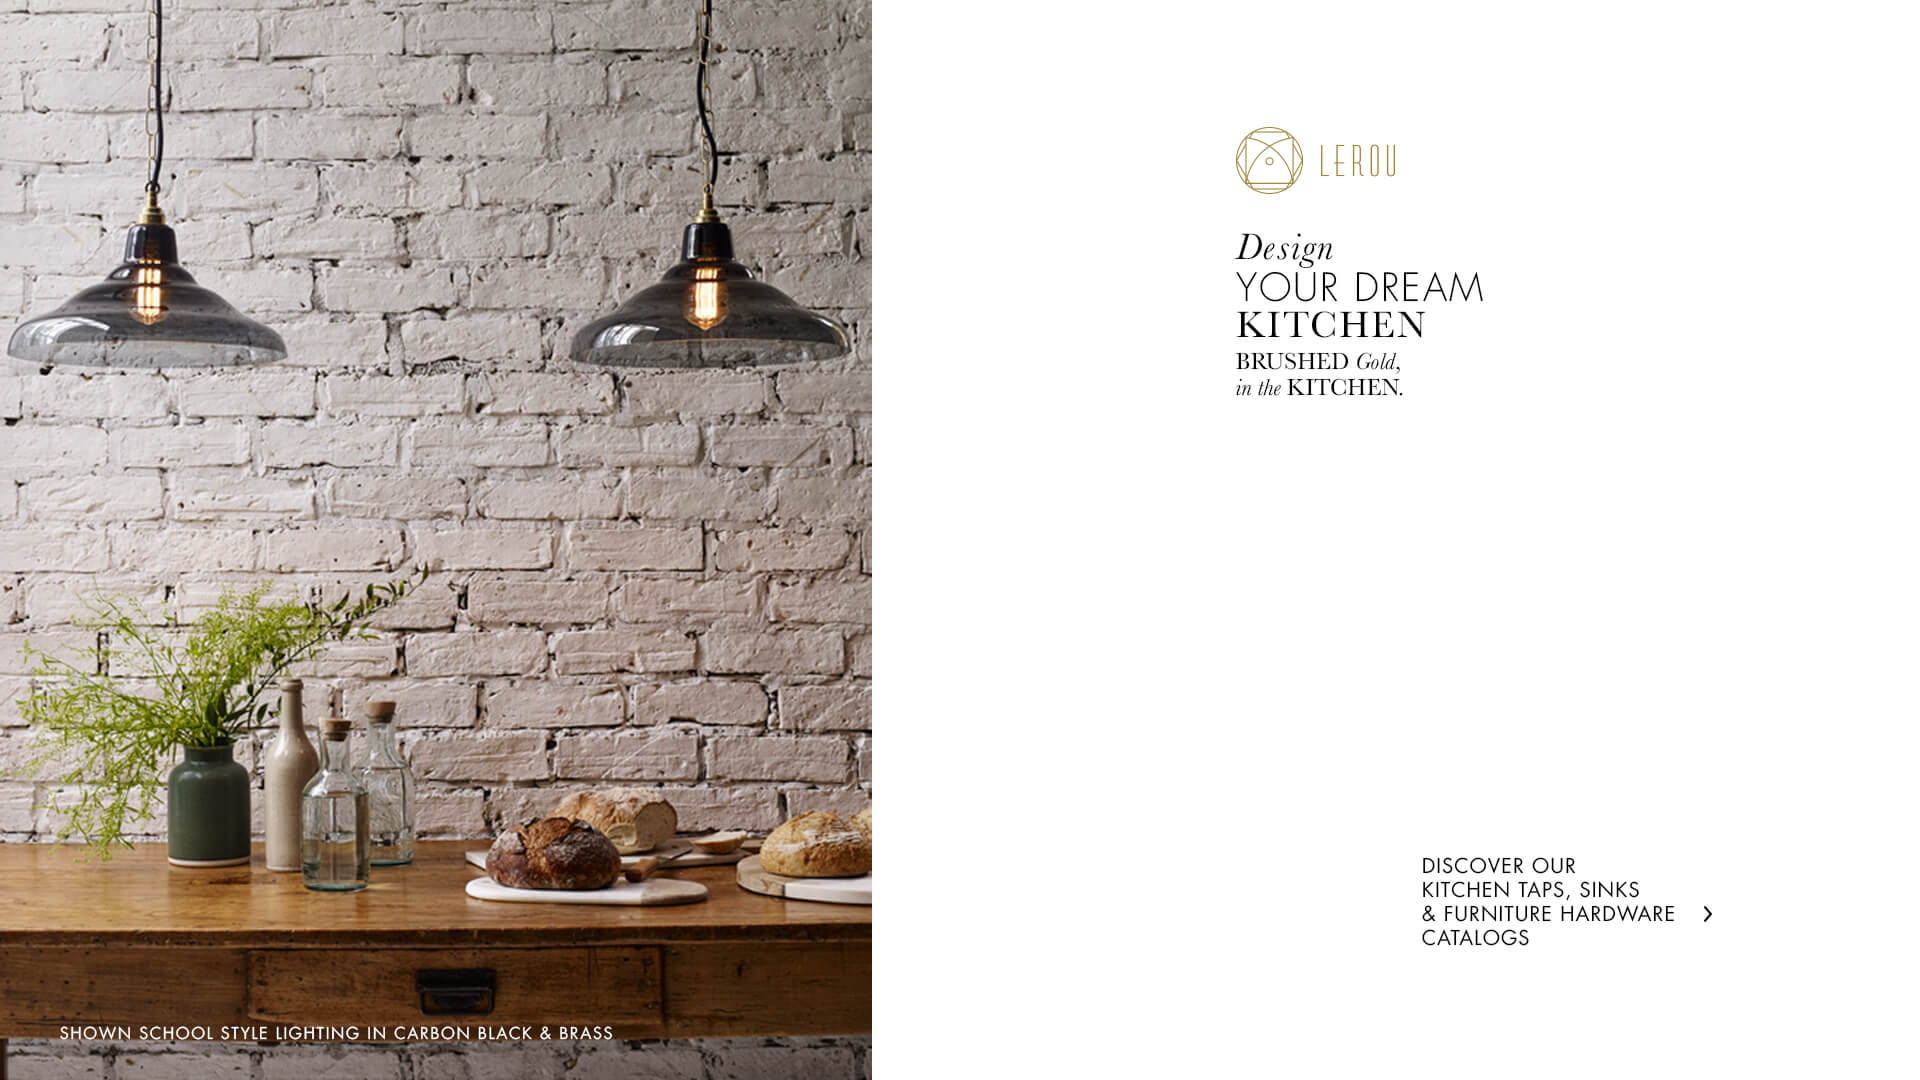 Design Your Dream Kitchen: Brushed Gold in the Kitchen. Ontwerp uw droomkeuken: geborsteld Goud in de keuken.